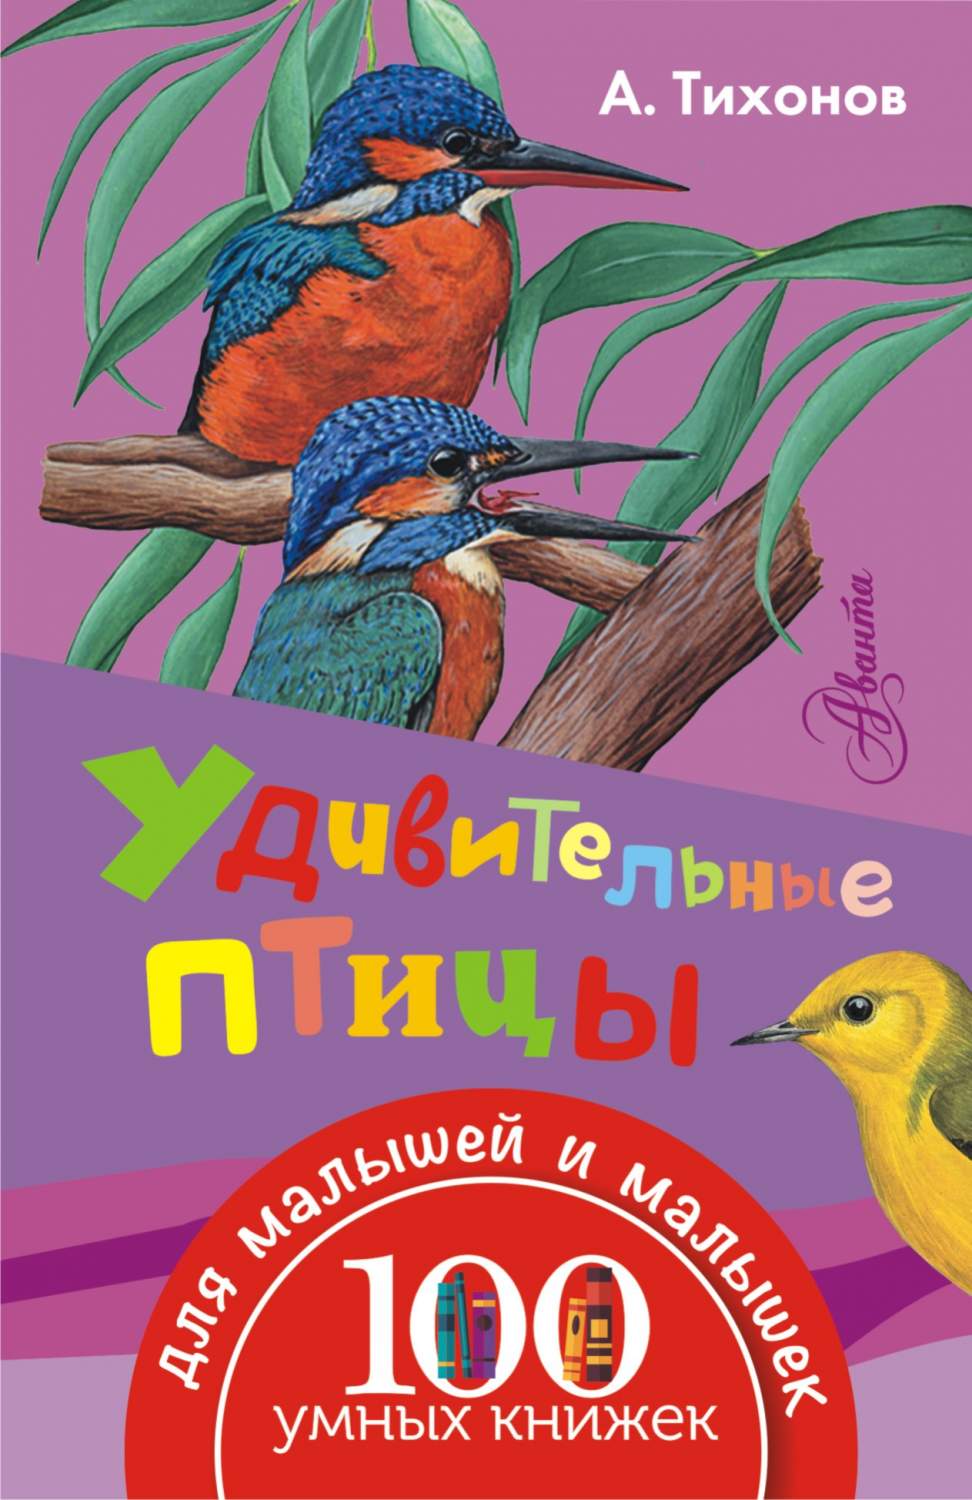 Книга Удивительные птицы - купить книги по обучению и развитию детей в  интернет-магазинах, цены в Москве на Мегамаркет | 195445